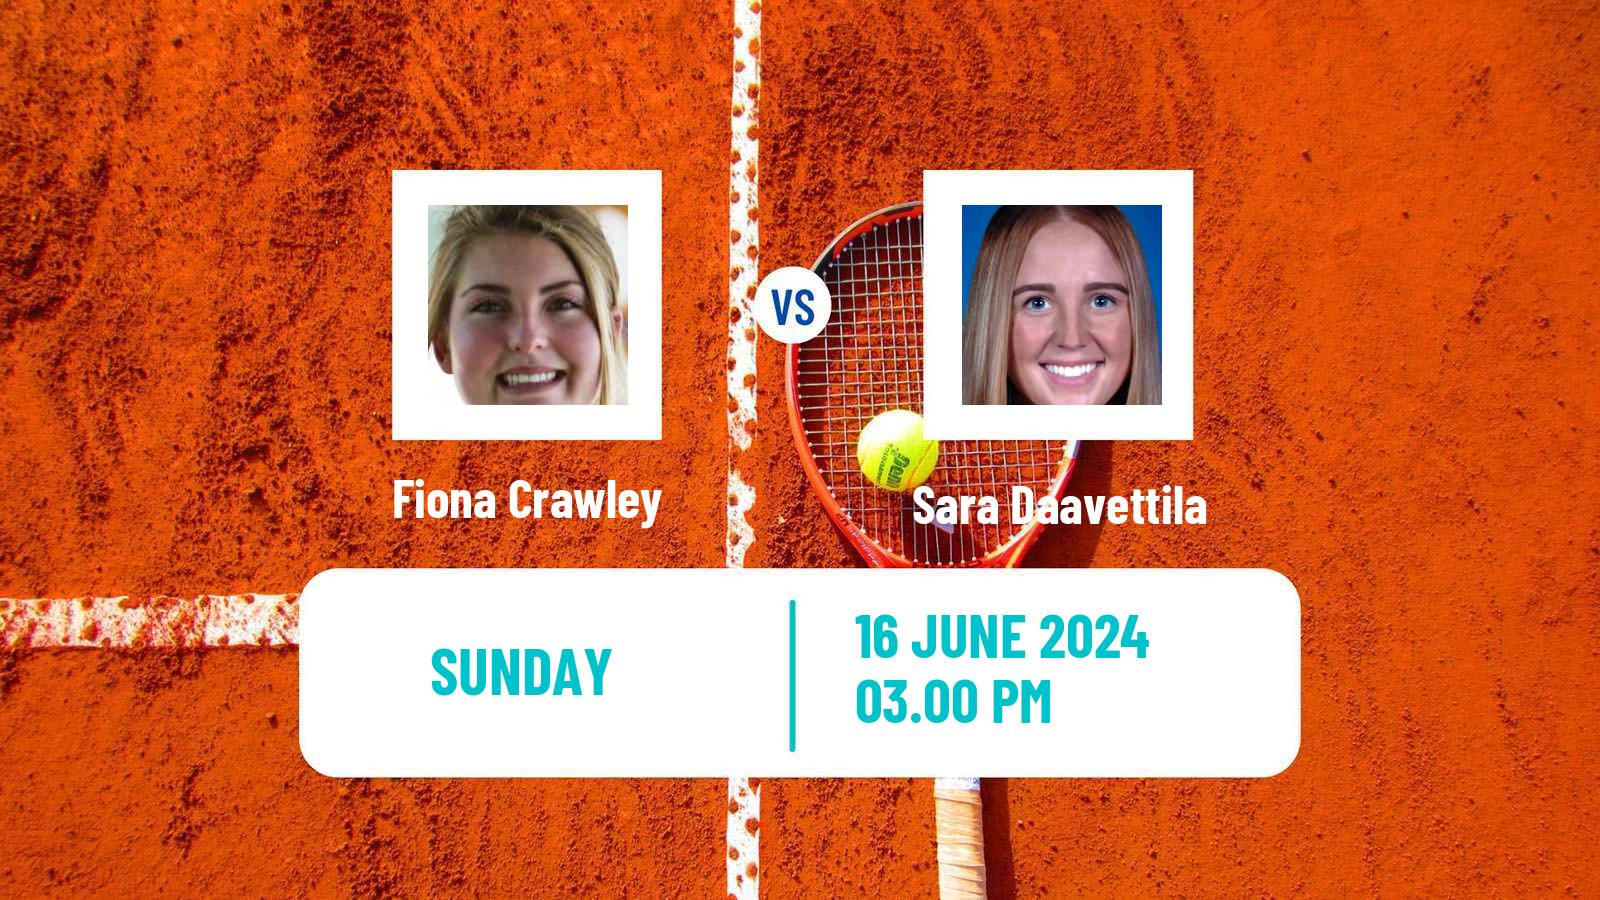 Tennis ITF W15 San Diego Ca 3 Women Fiona Crawley - Sara Daavettila